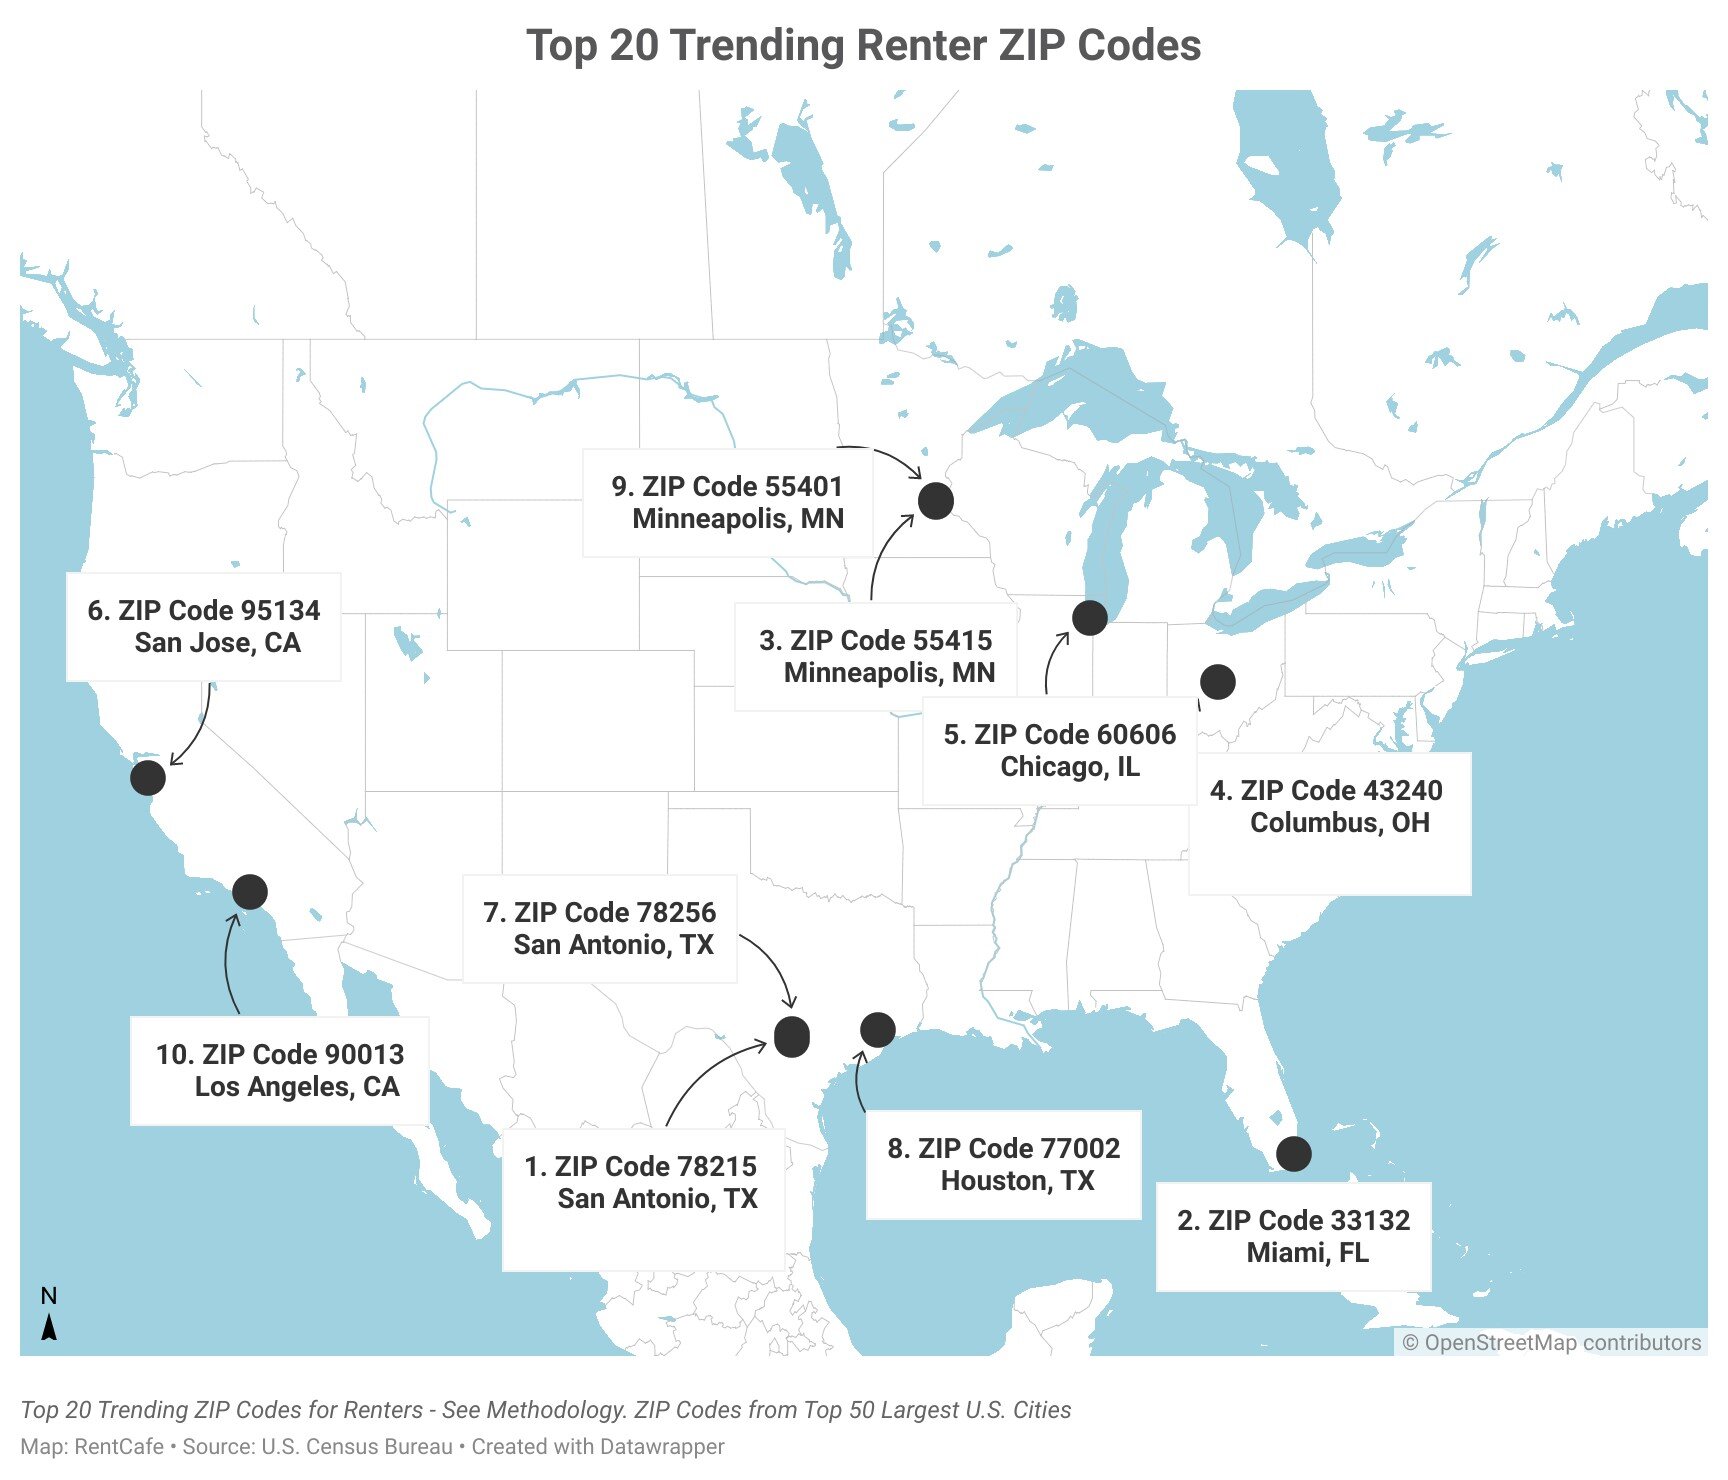 https://www.worldpropertyjournal.com/news-asset-2/top-20-trending-renter-zip-codes.jpg